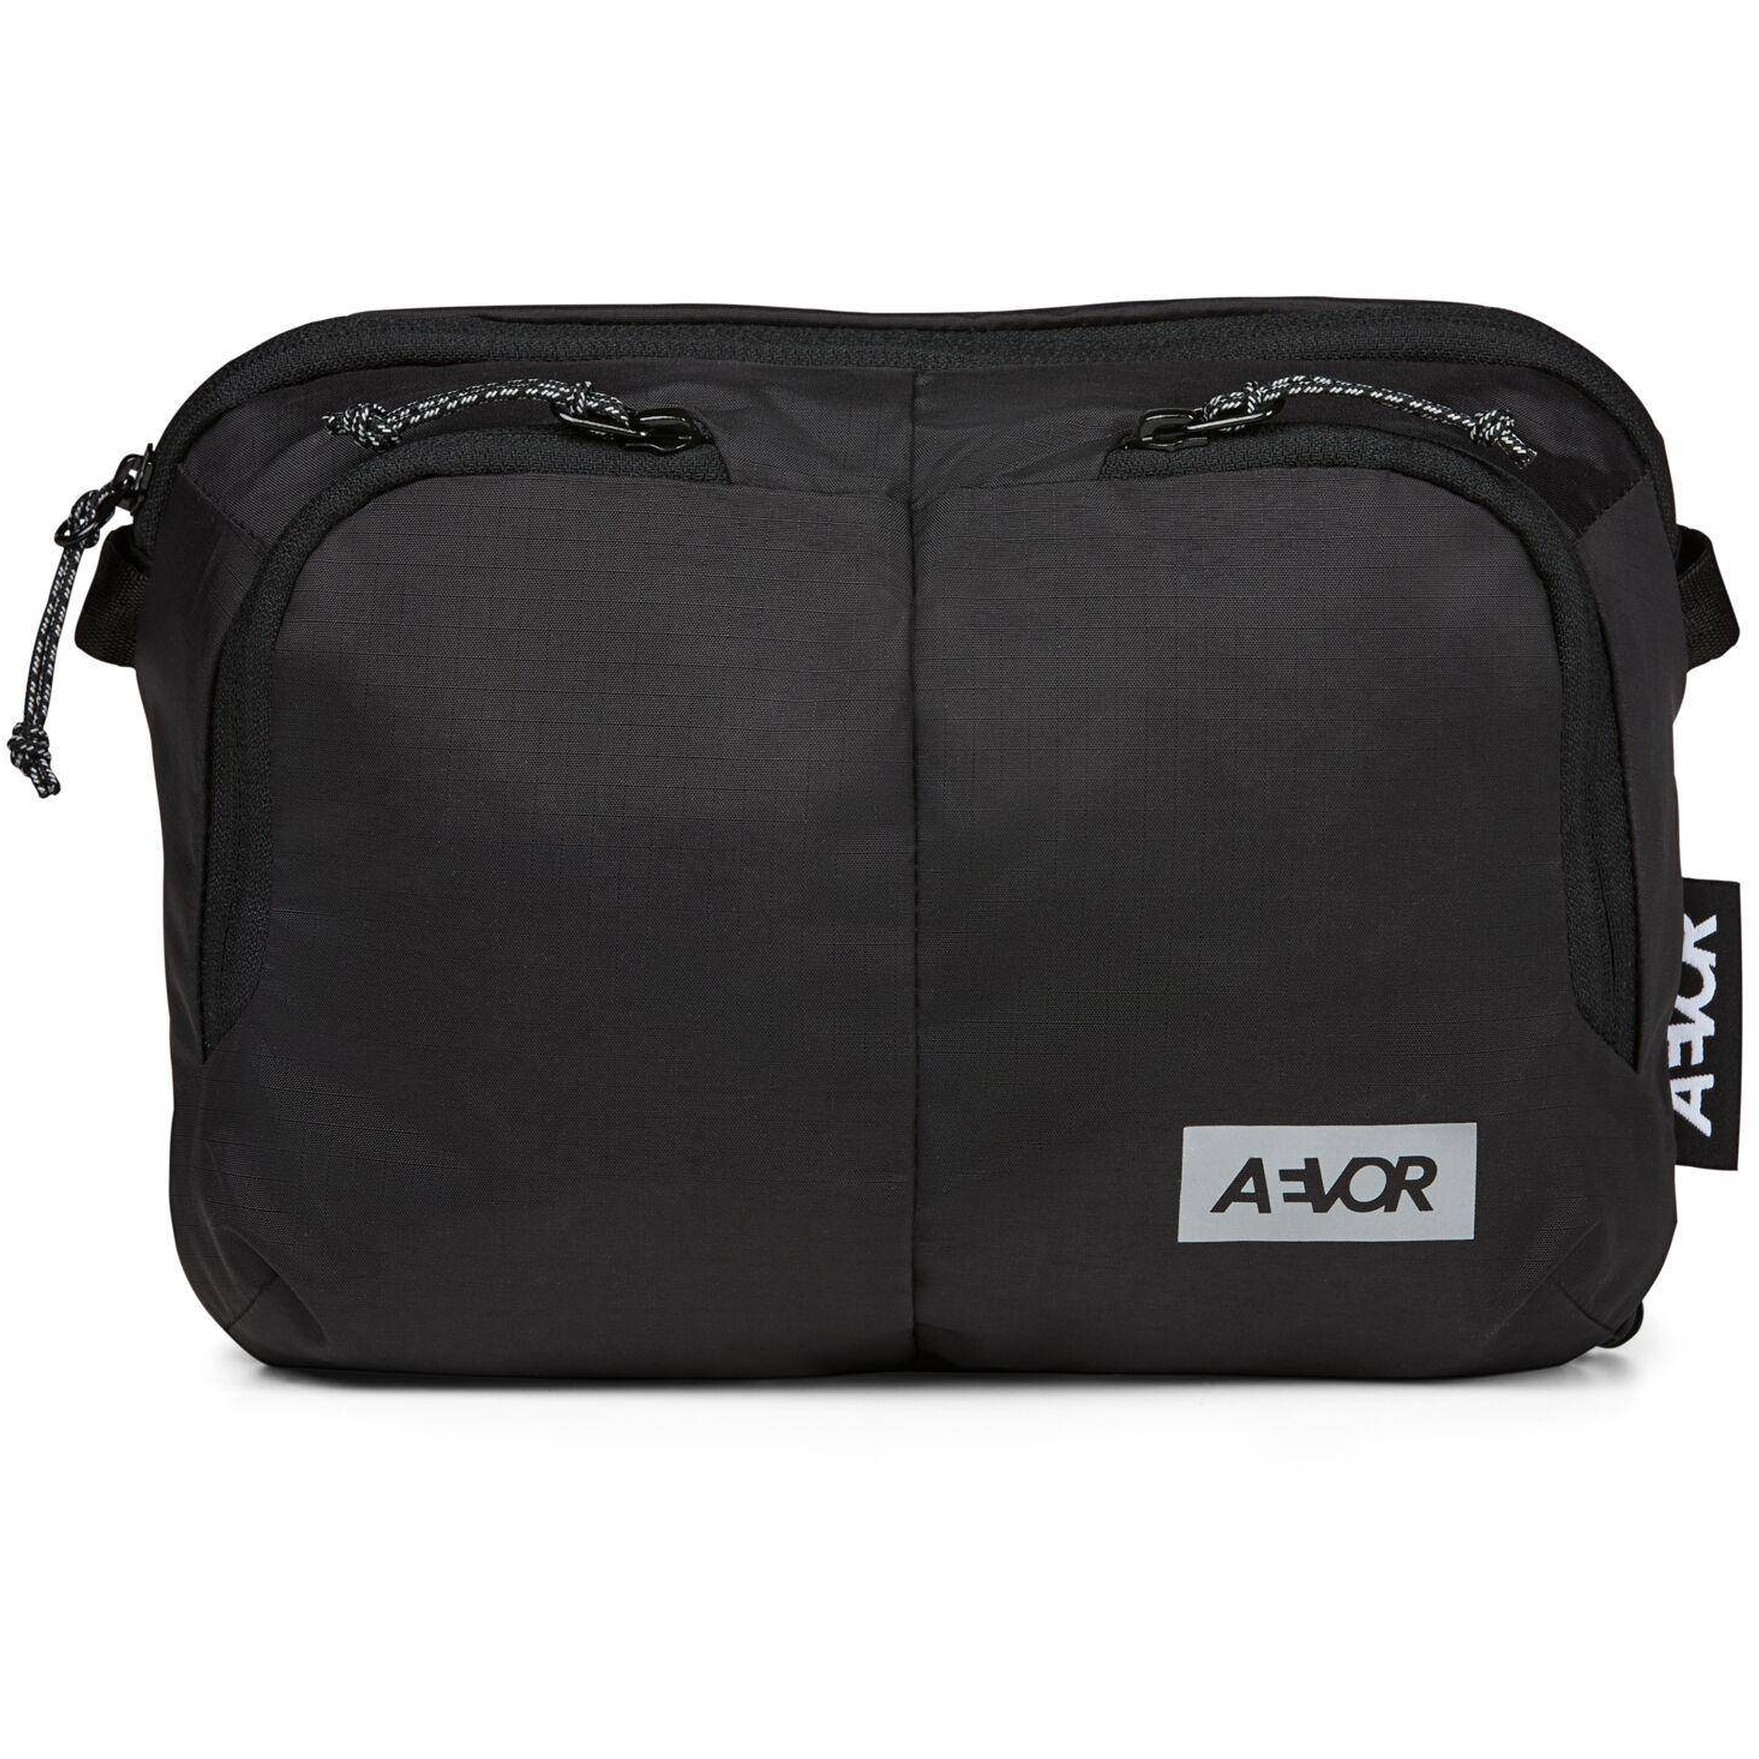 Produktbild von AEVOR Sacoche Bag 4L Umhängetasche - Ripstop Black